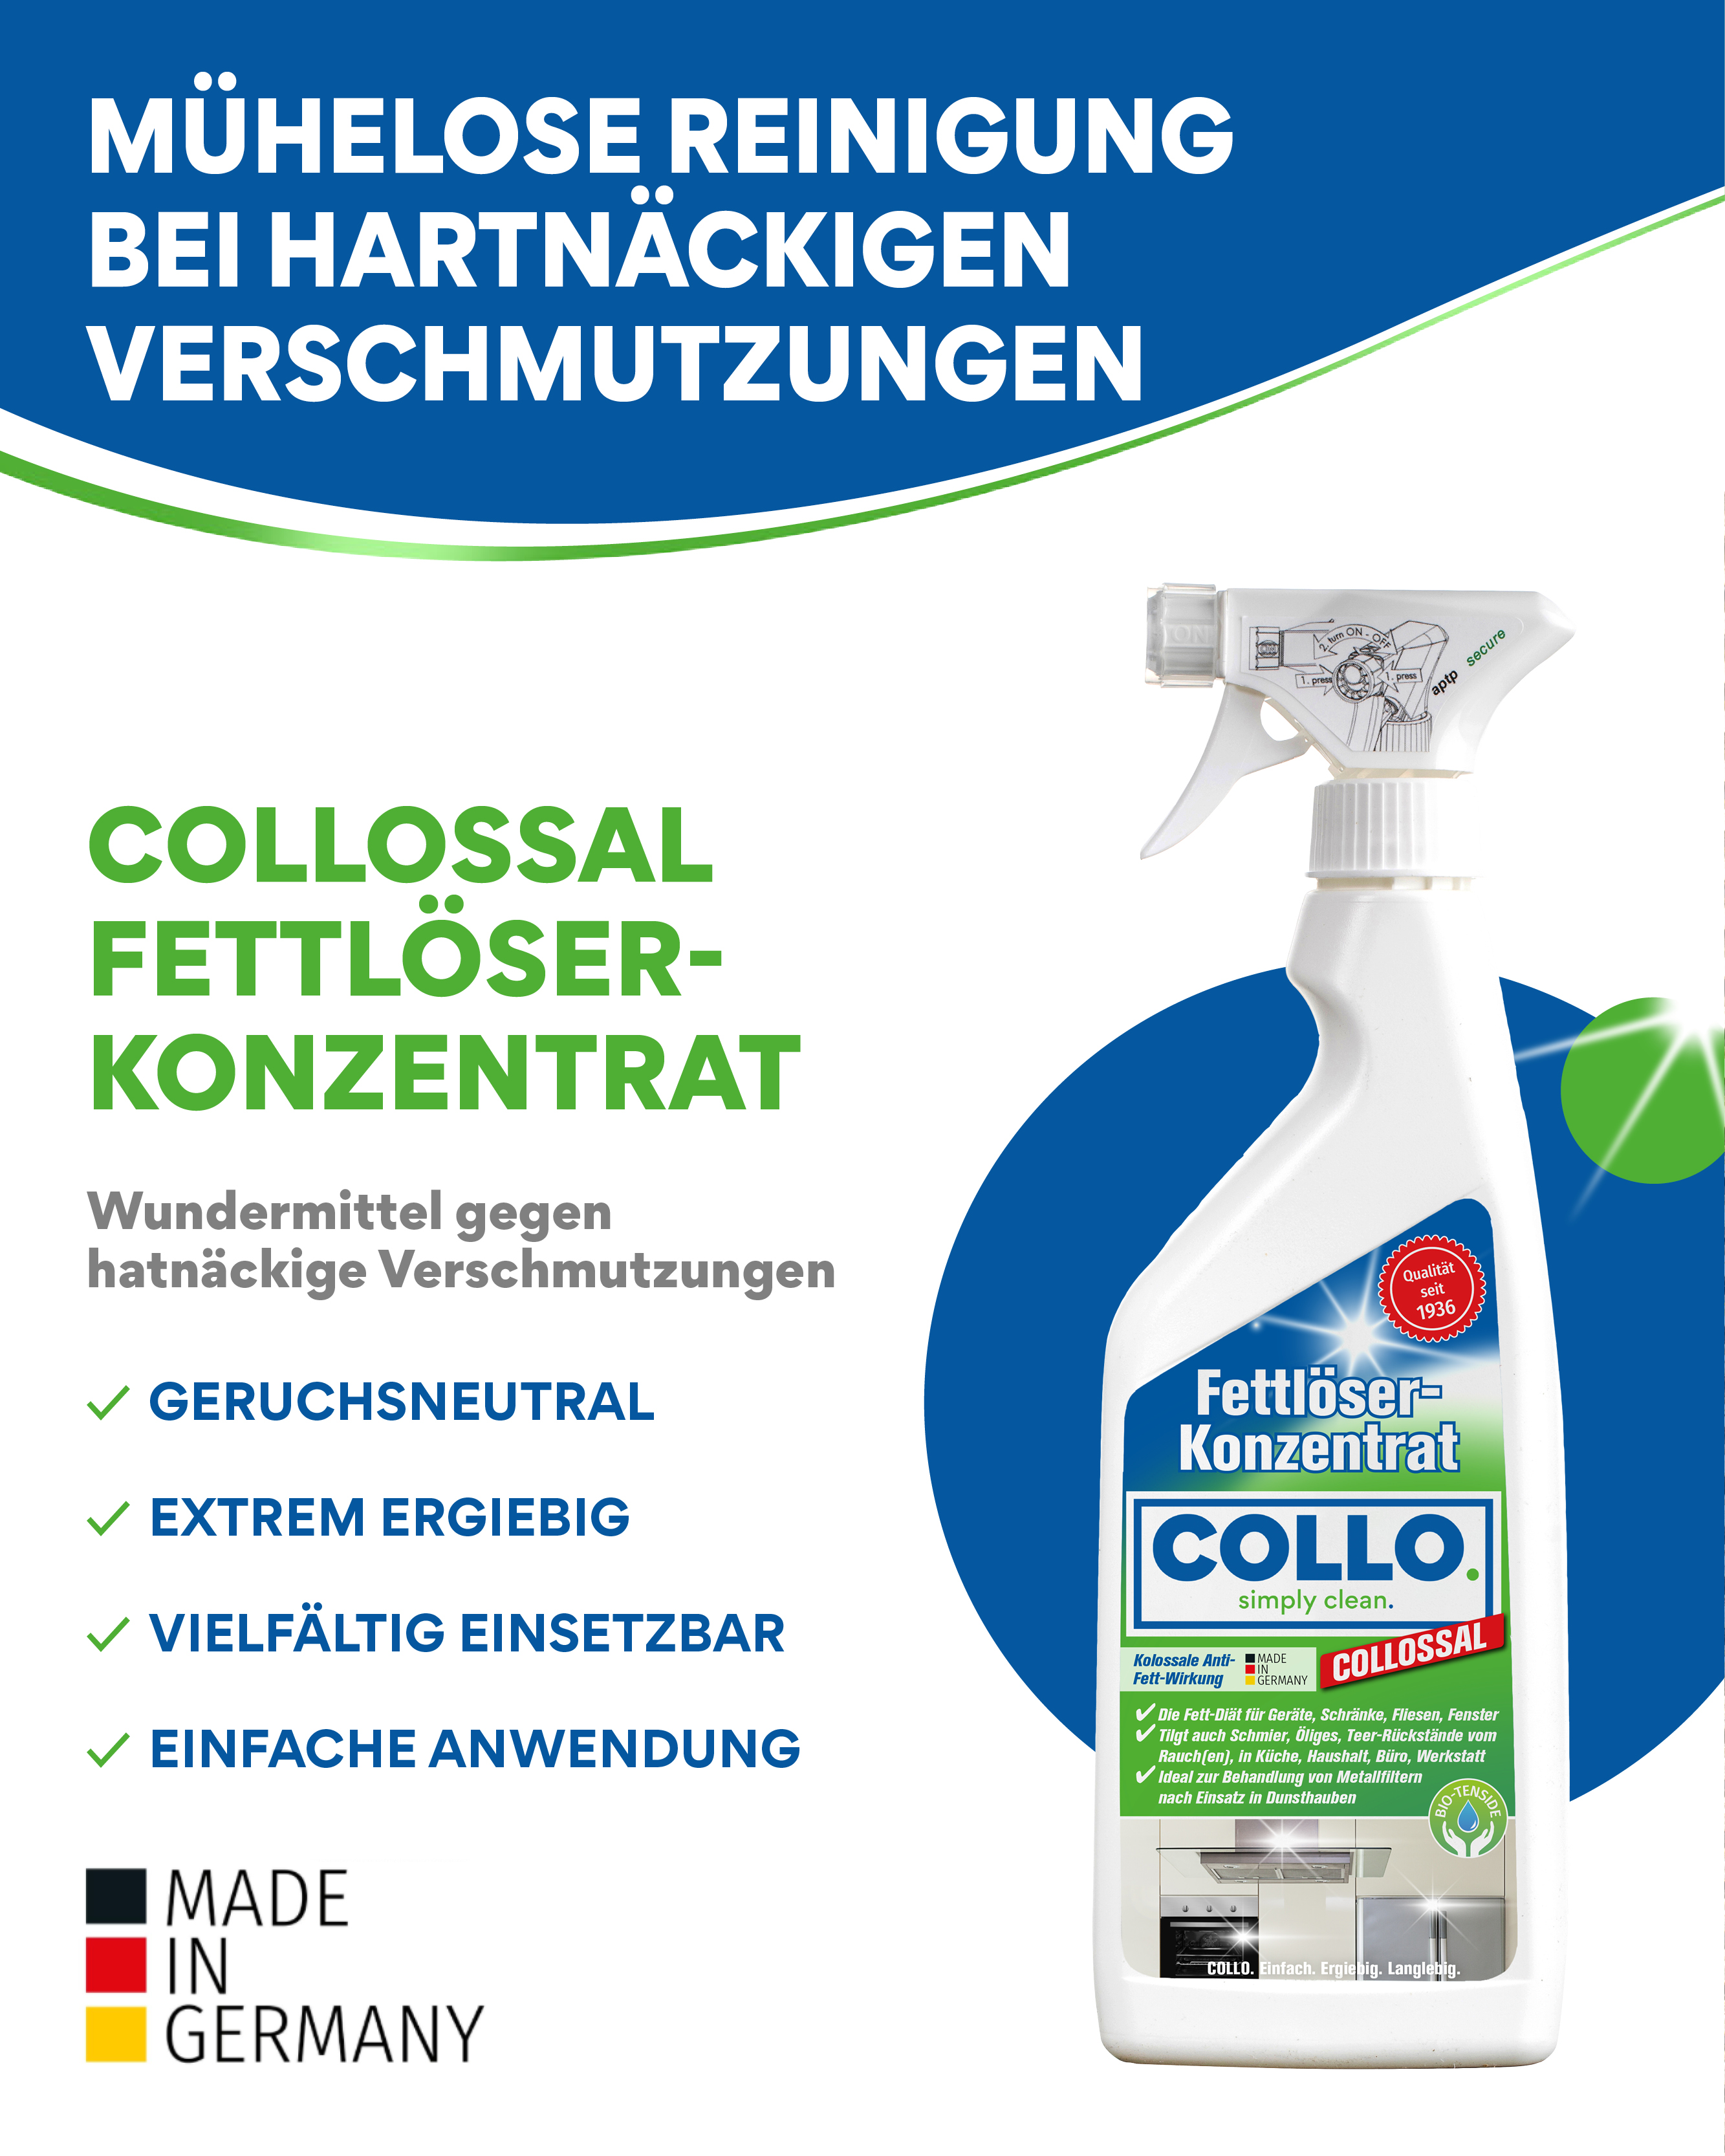 COLLO COLLOSSAL Fettlöser – Geruchsneutral und effektiv. Keine beißenden Gerüche beim Reinigen. Frische und saubere Oberflächen ohne Kompromisse.